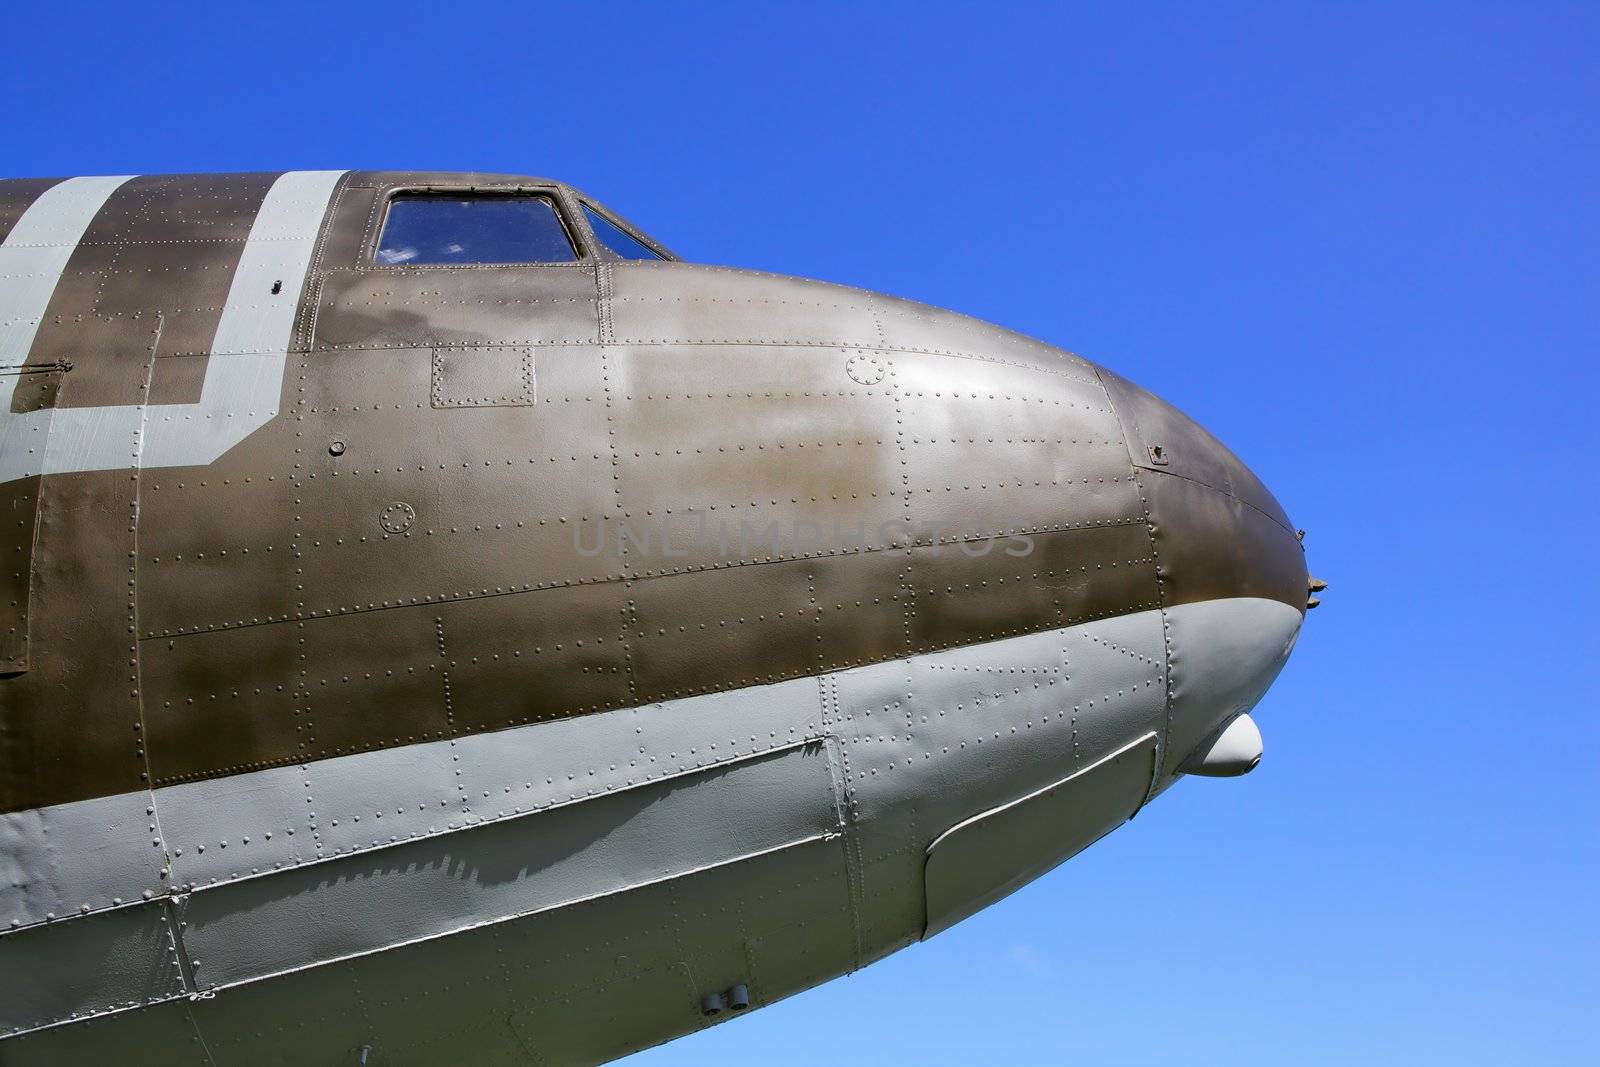 Old Airplane Nose by bobkeenan